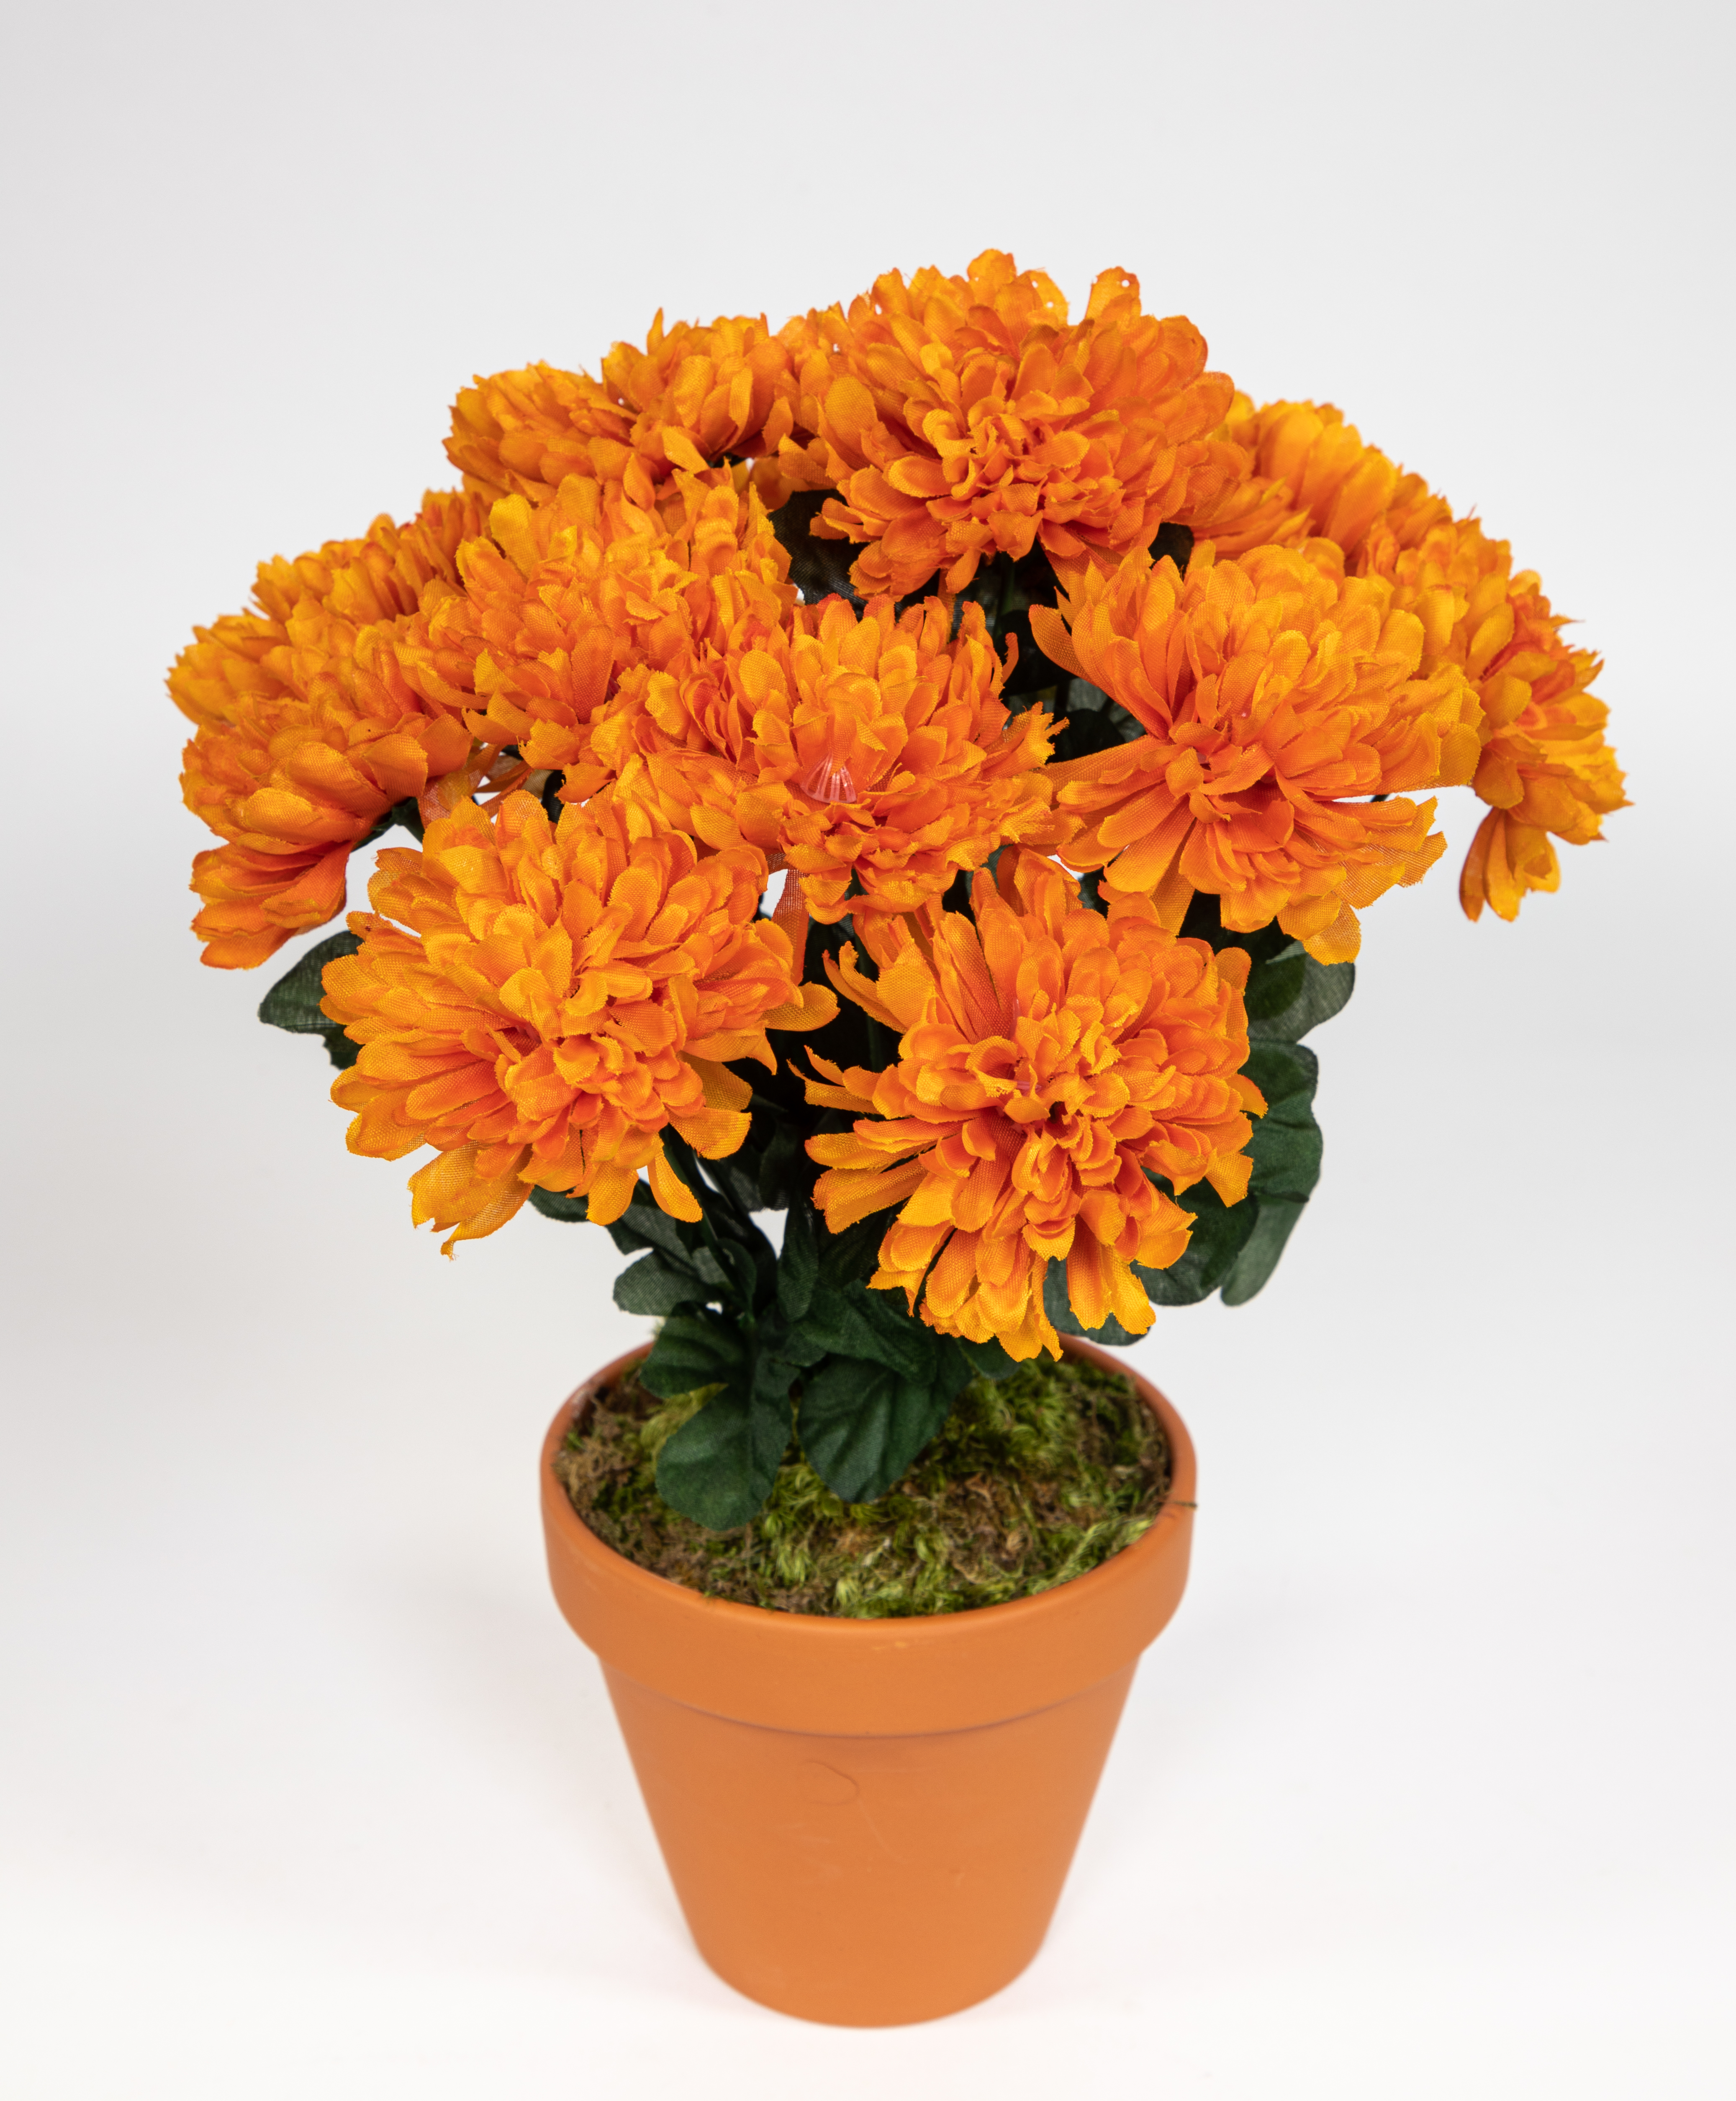 Chrysantheme 30cm orange im Topf DP Kunstpflanzen künstliche Pflanzen Blumen Kunstblumen